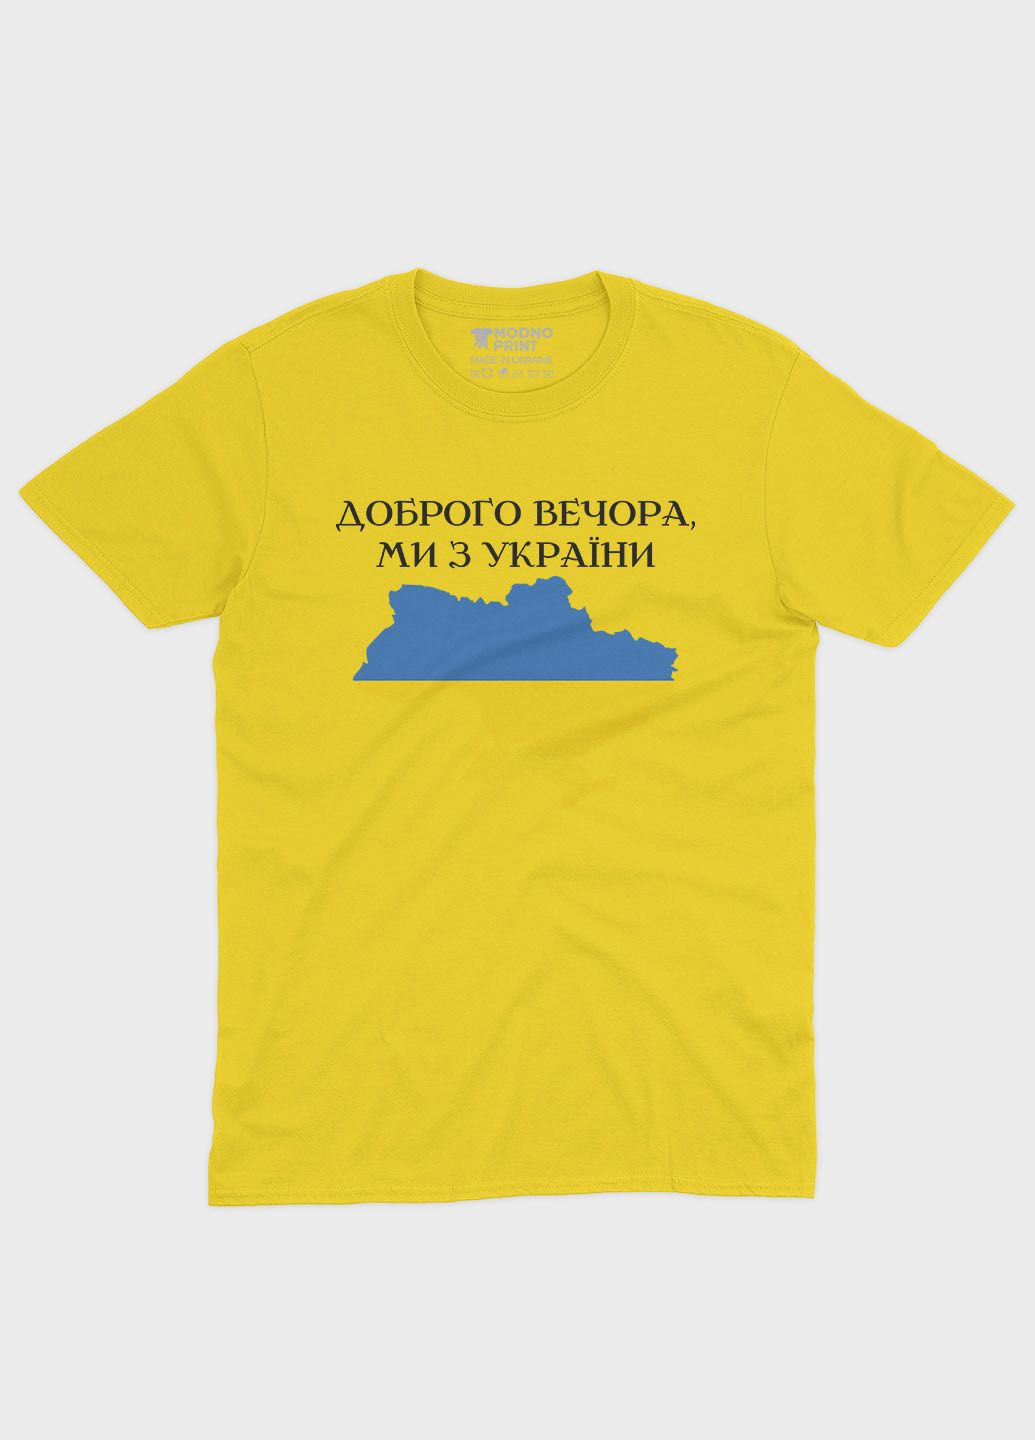 Желтая мужская футболка с патриотическим принтом добрый вечер (ts001-2-sun-005-1-048) Modno